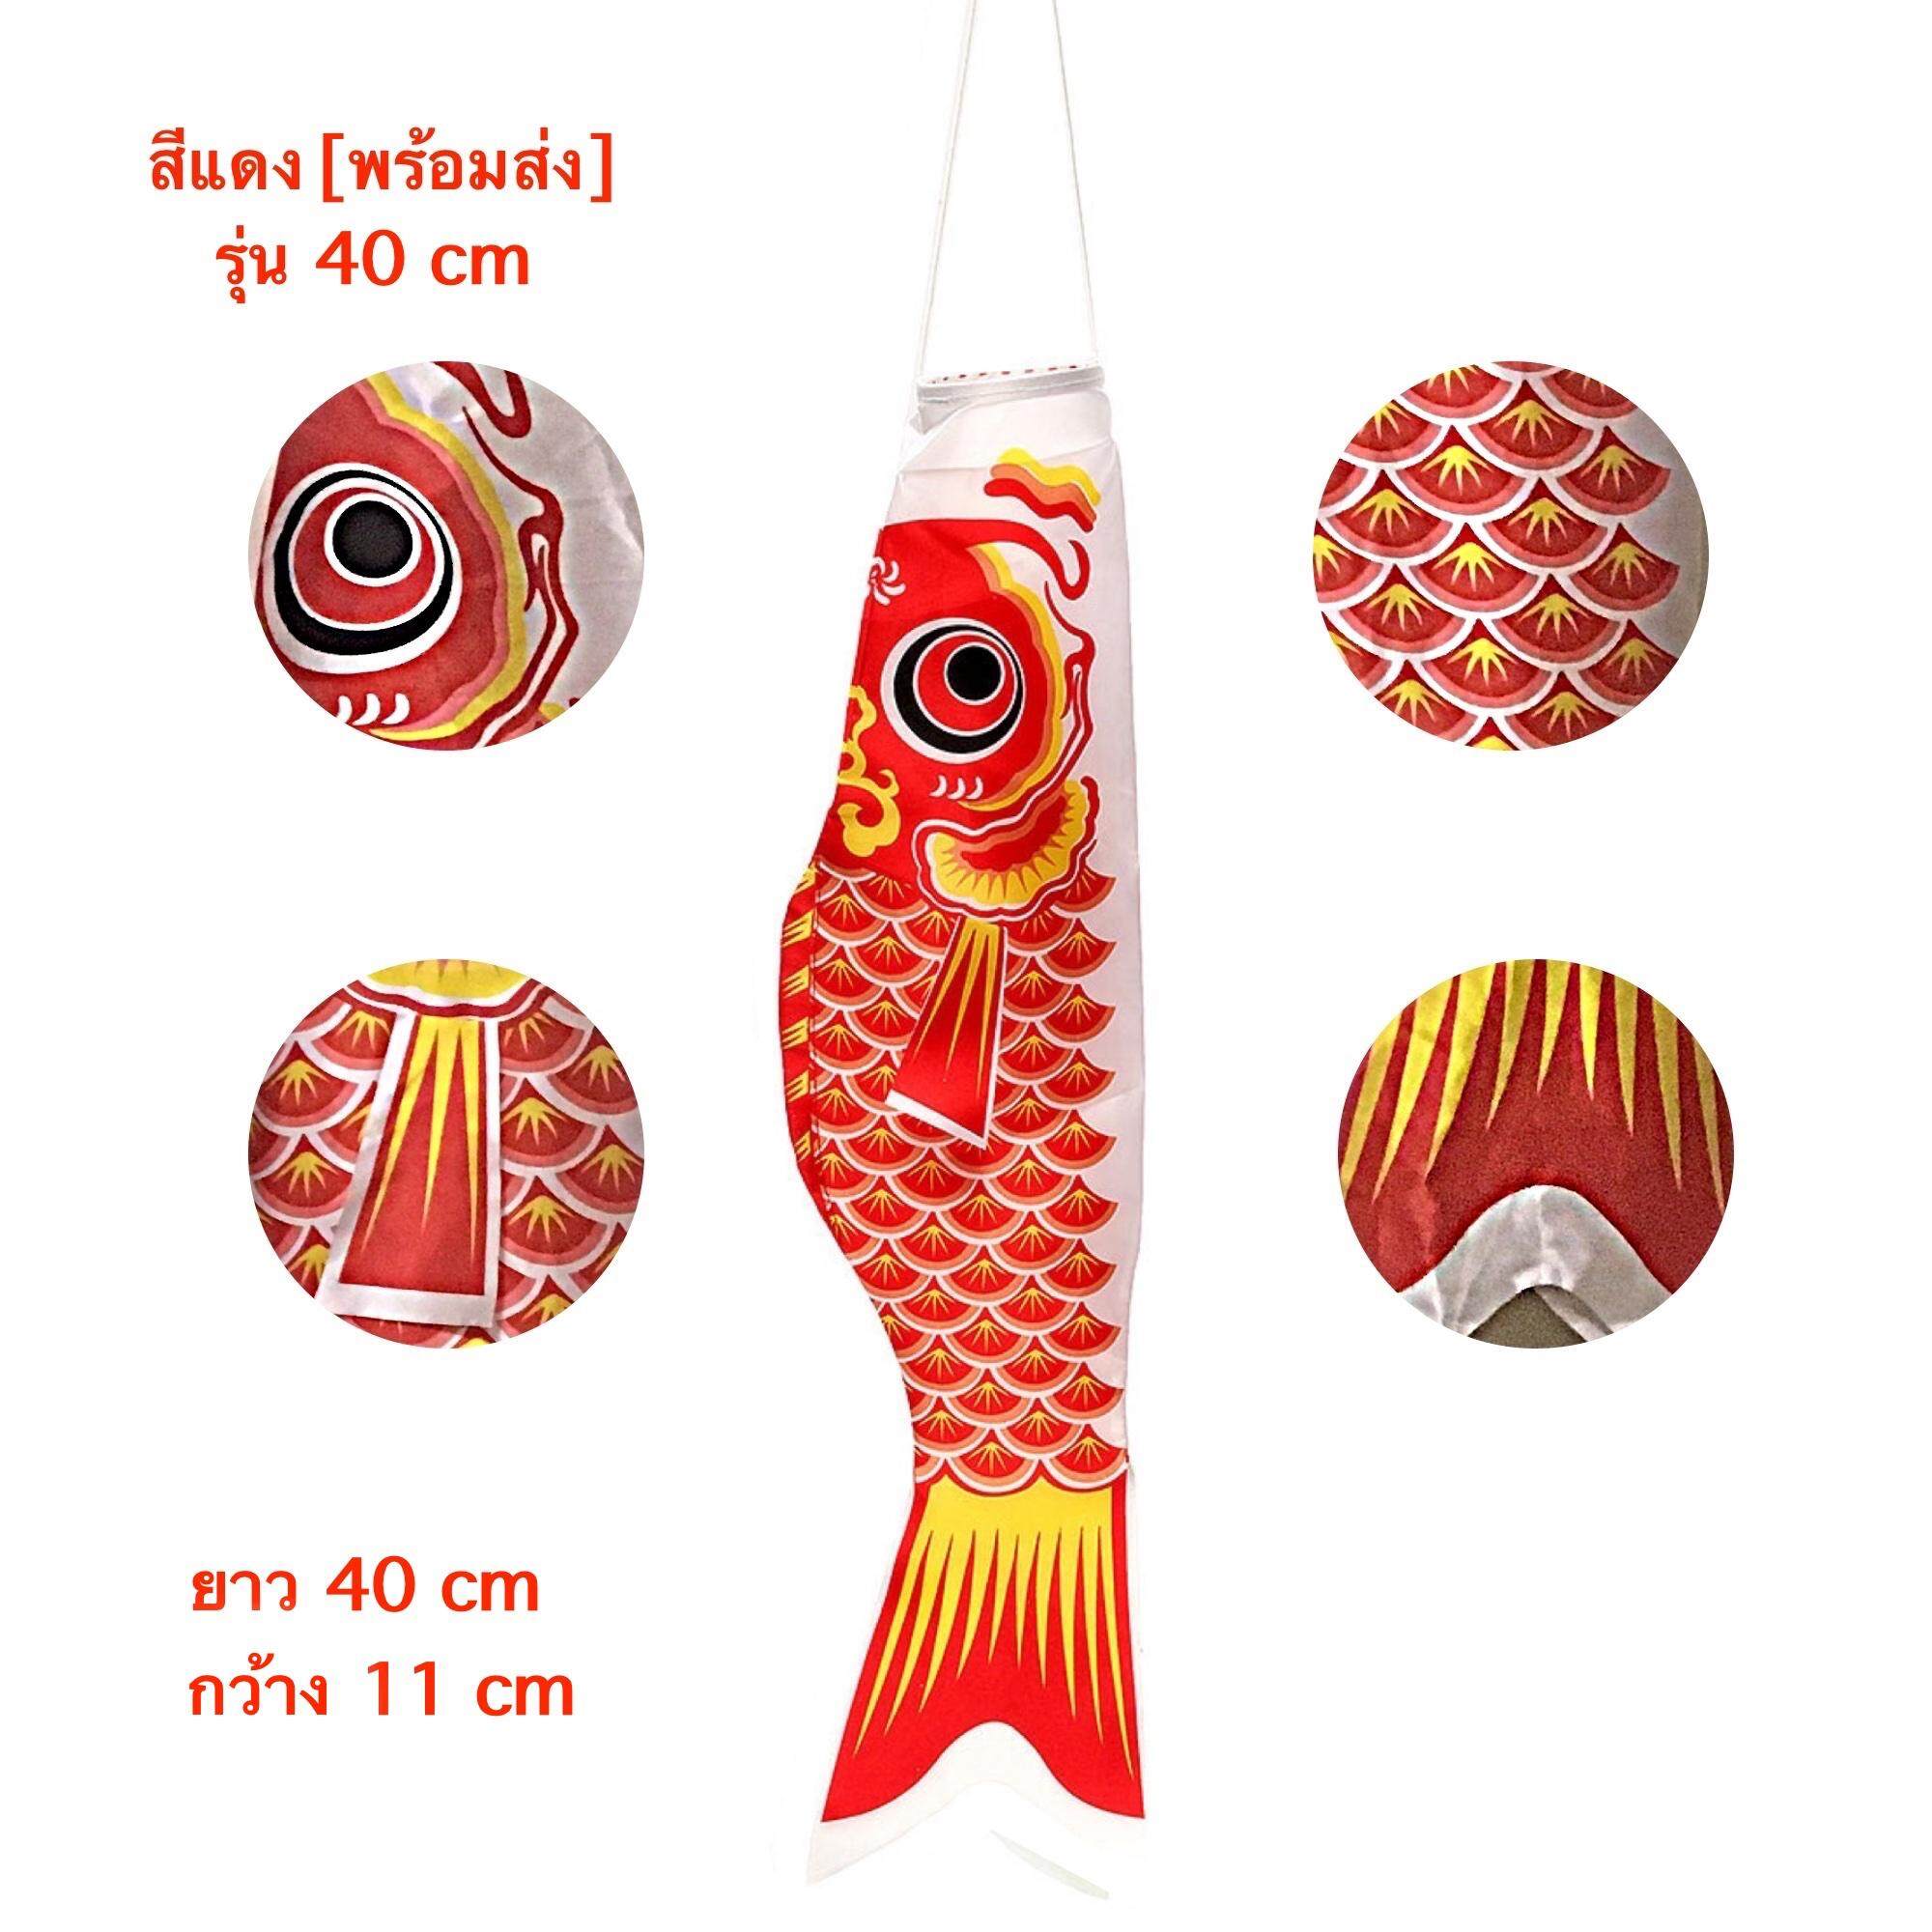 ธงปลา ธงปลาคาร์ฟ ธงปลาคราฟญี่ปุ่น 40cm-300cm [ส่งฟรีเมื่อซื้อครบ 99 บาท]